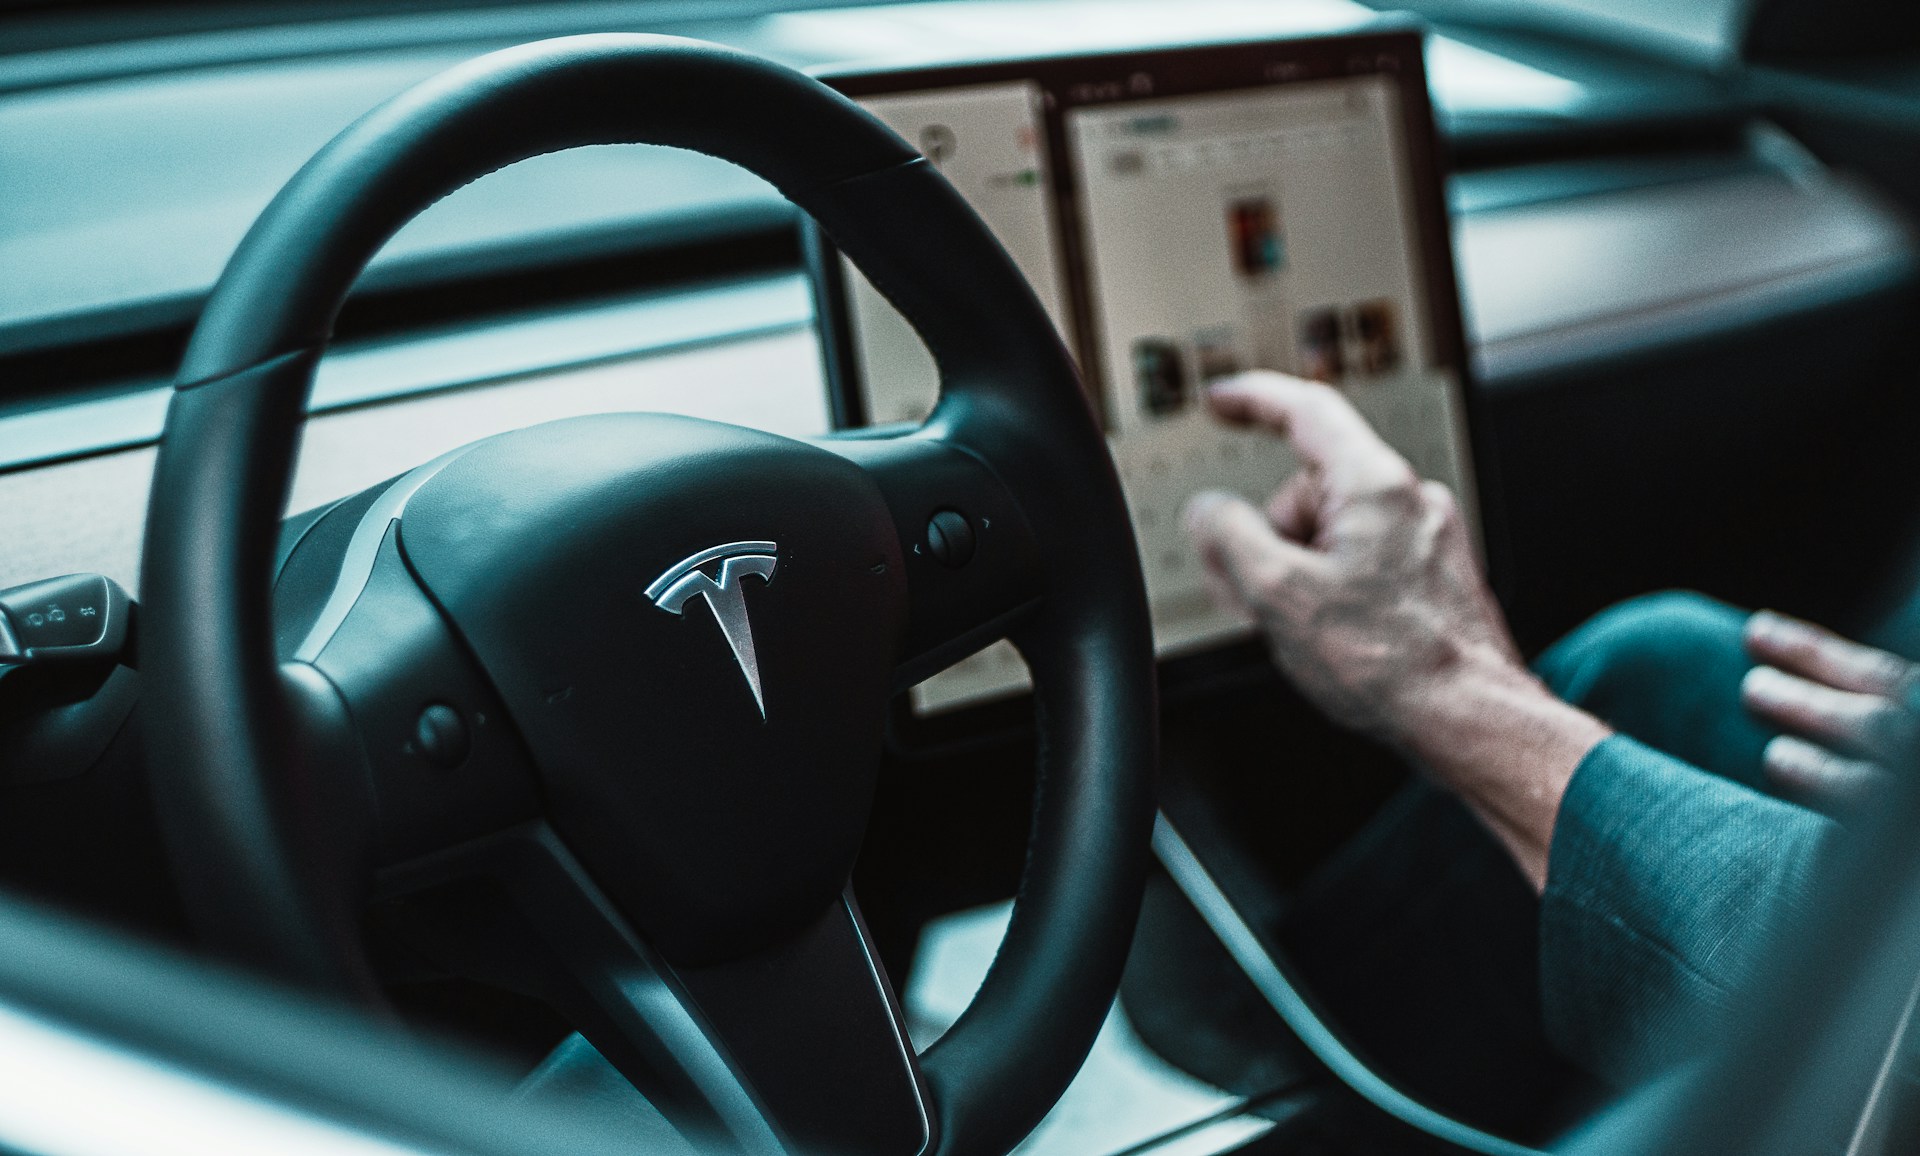 Tesla obniża o połowę cenę subskrypcji Full Self Driving w obliczu spadku sprzedaży nowych samochodów